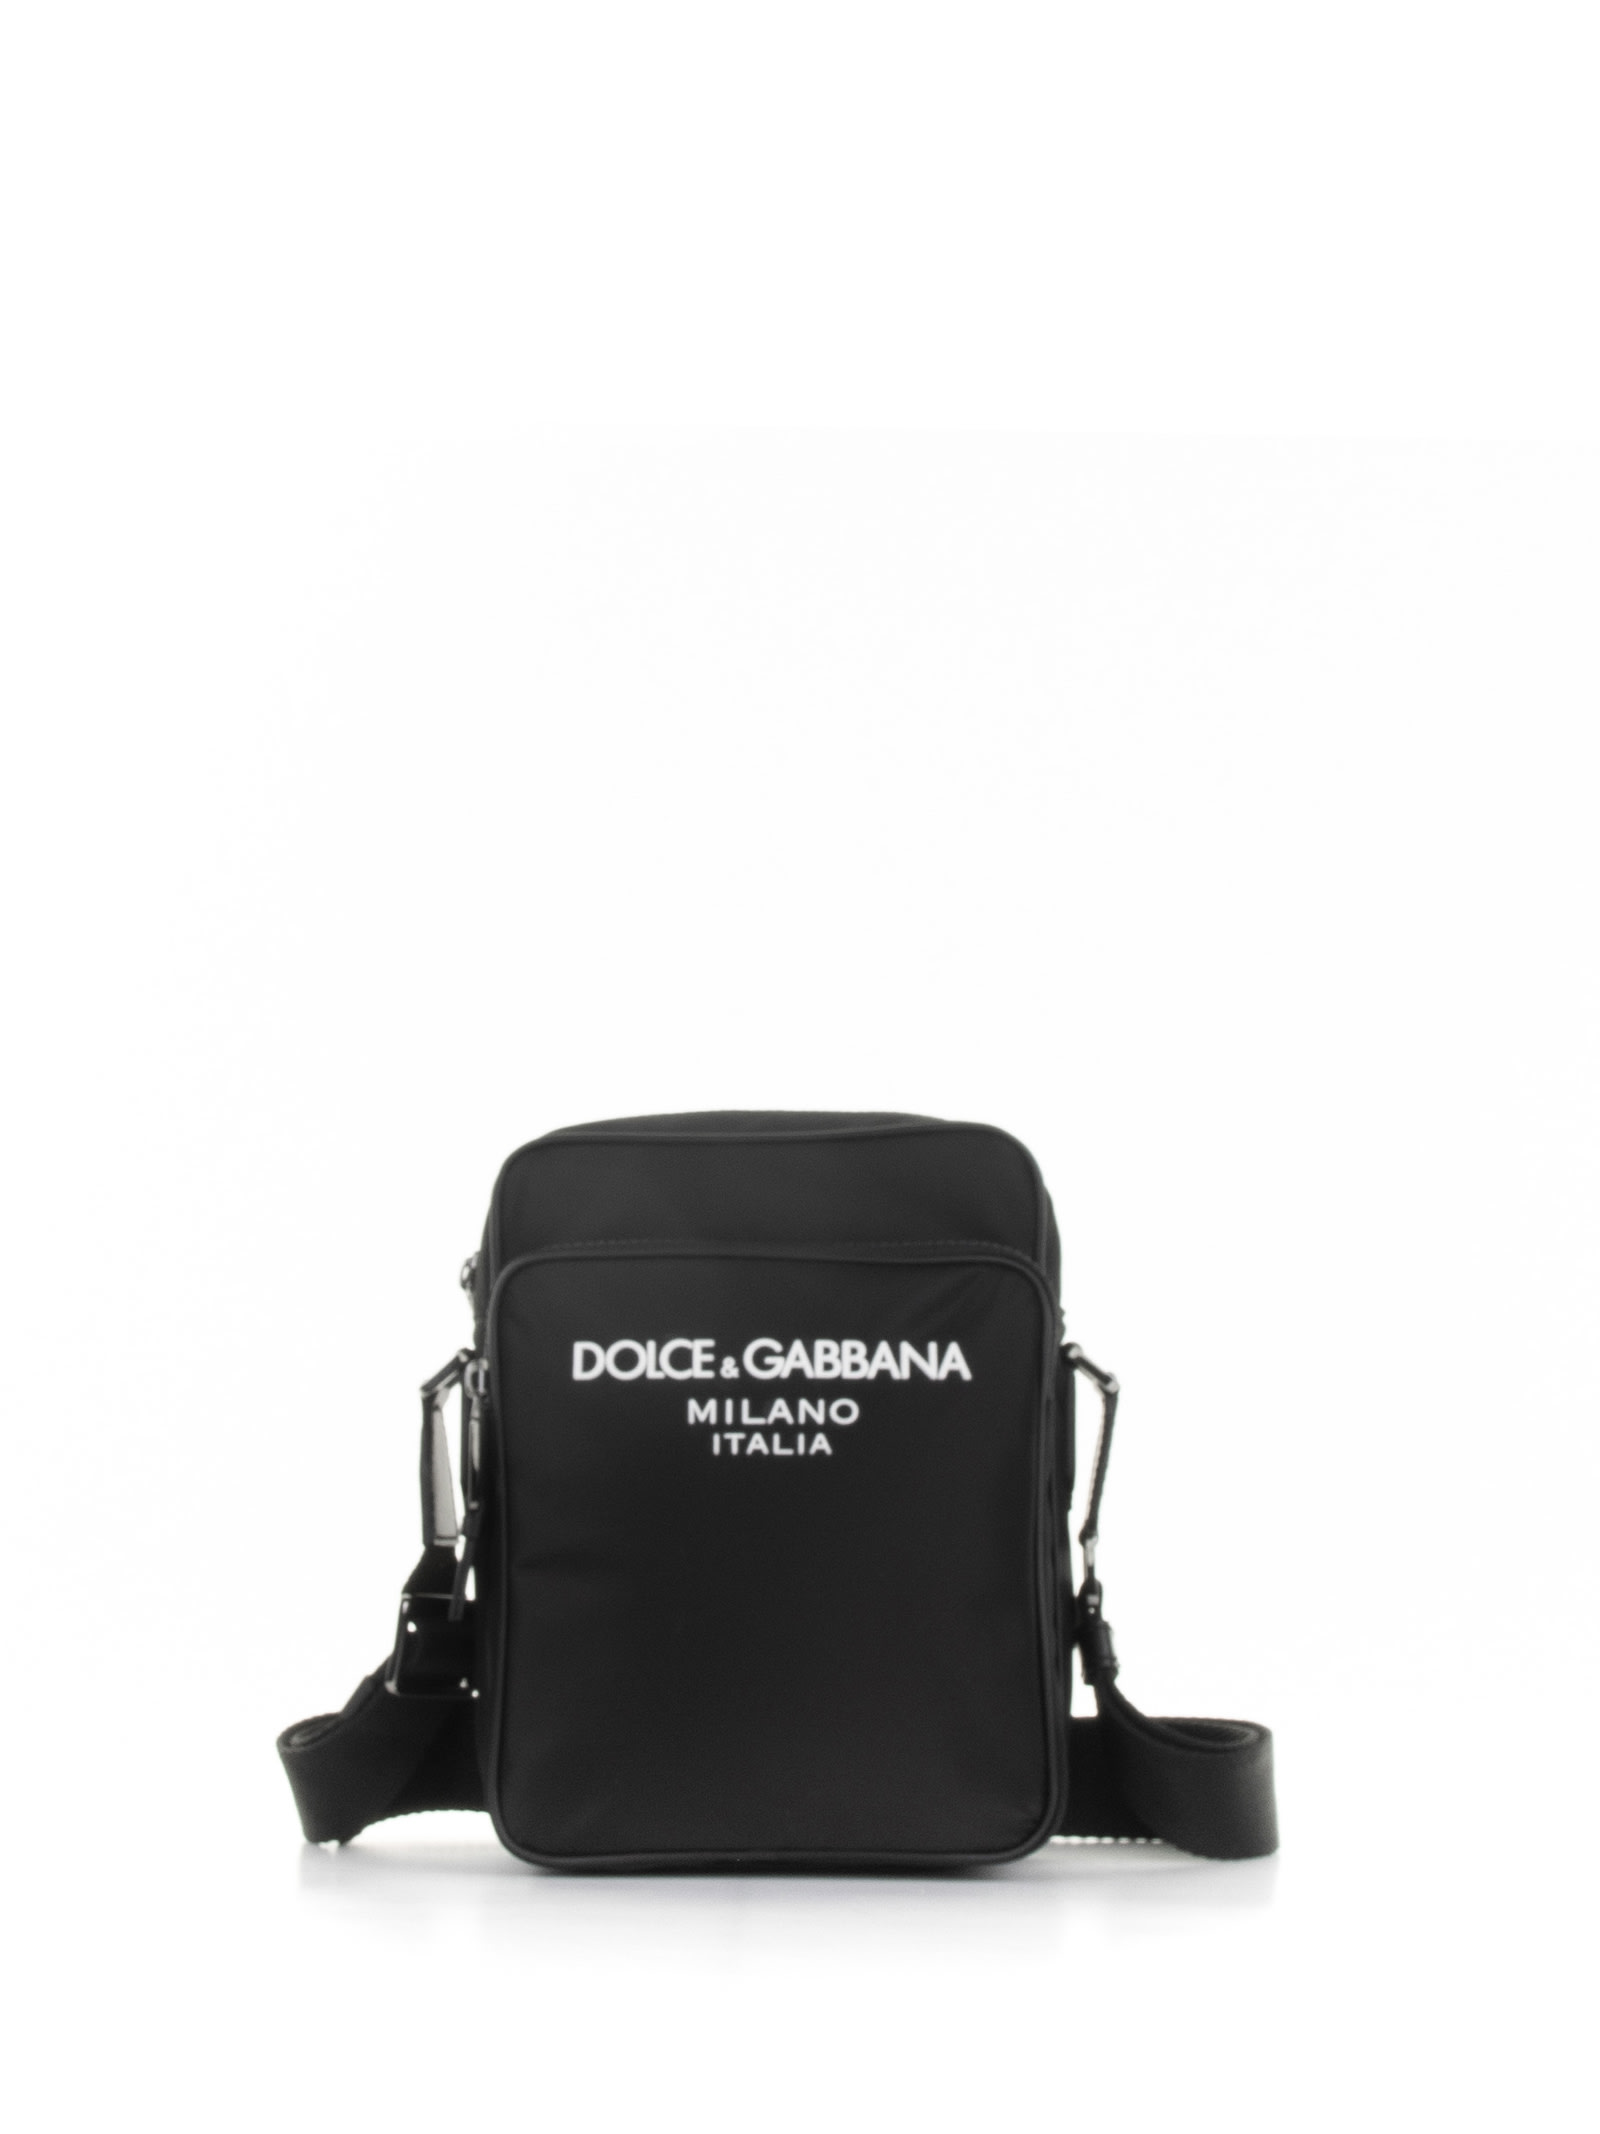 Dolce & Gabbana Logo Shoulder Bag In Nero/nero